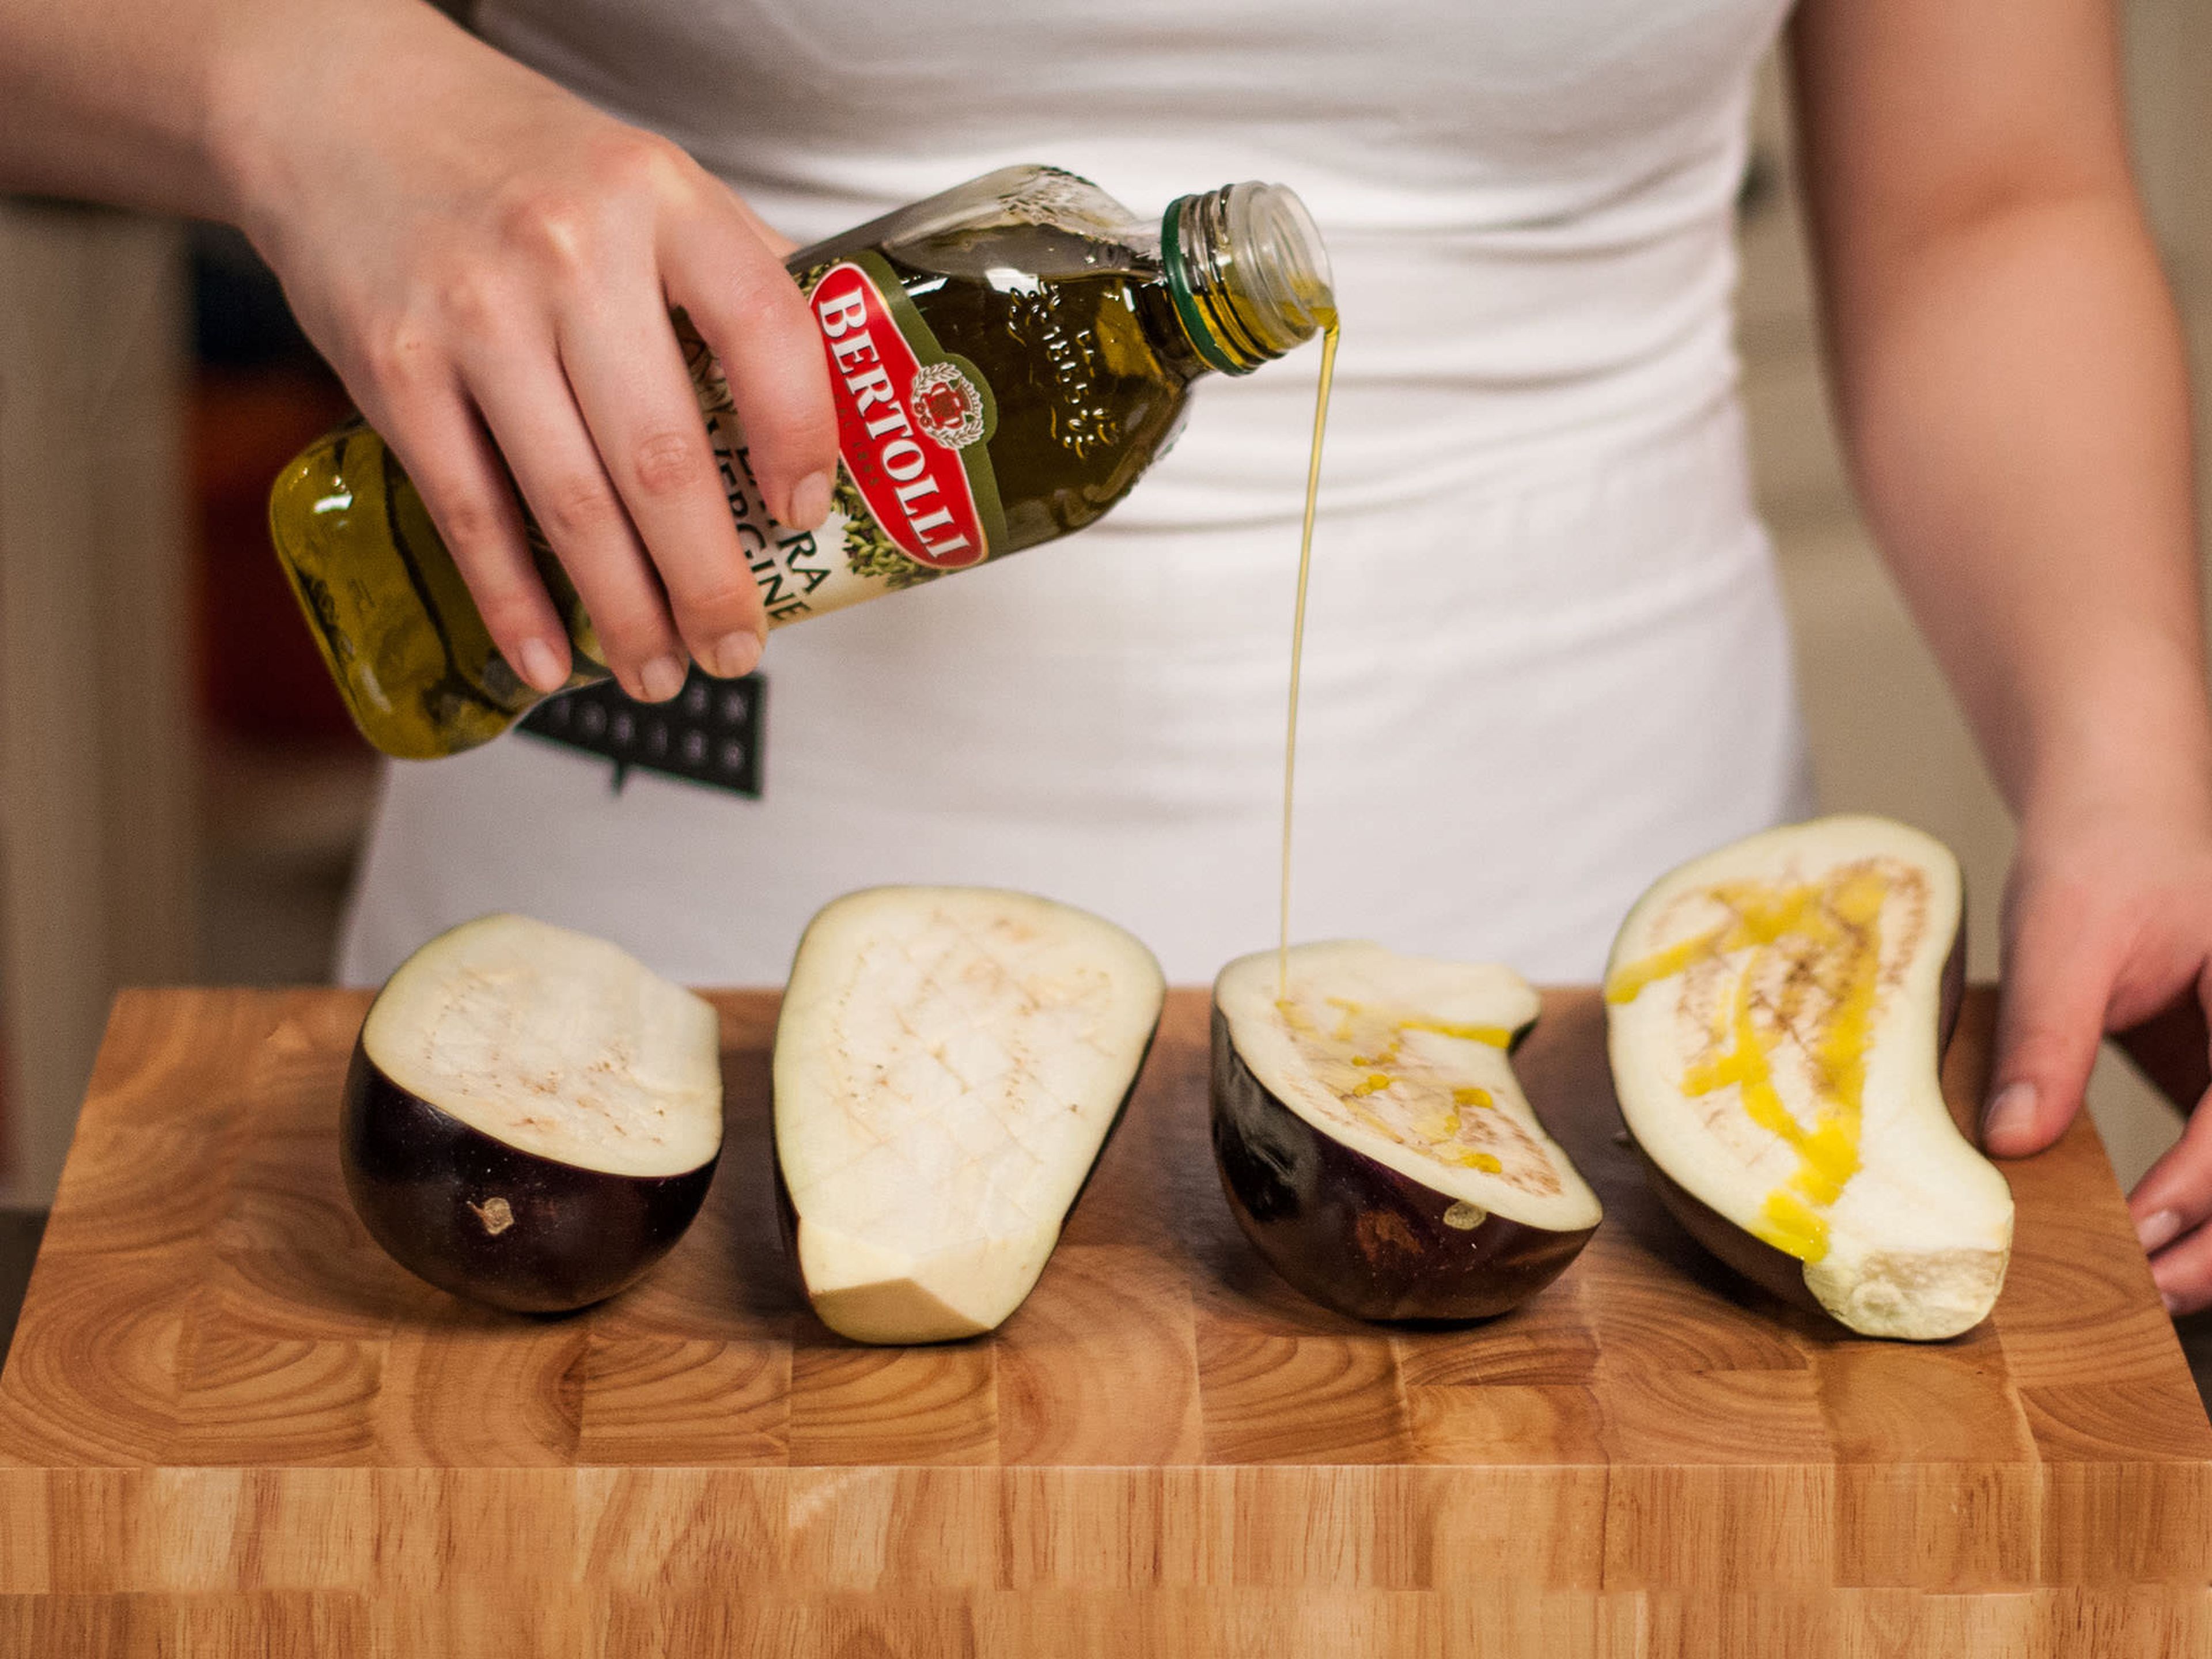 Backofen auf 200°C vorheizen. Auberginen halbieren, rautenförmig einschneiden und mit ca. 1/5 des Olivenöls beträufelt für ca. 30 – 40 Min. weich backen.